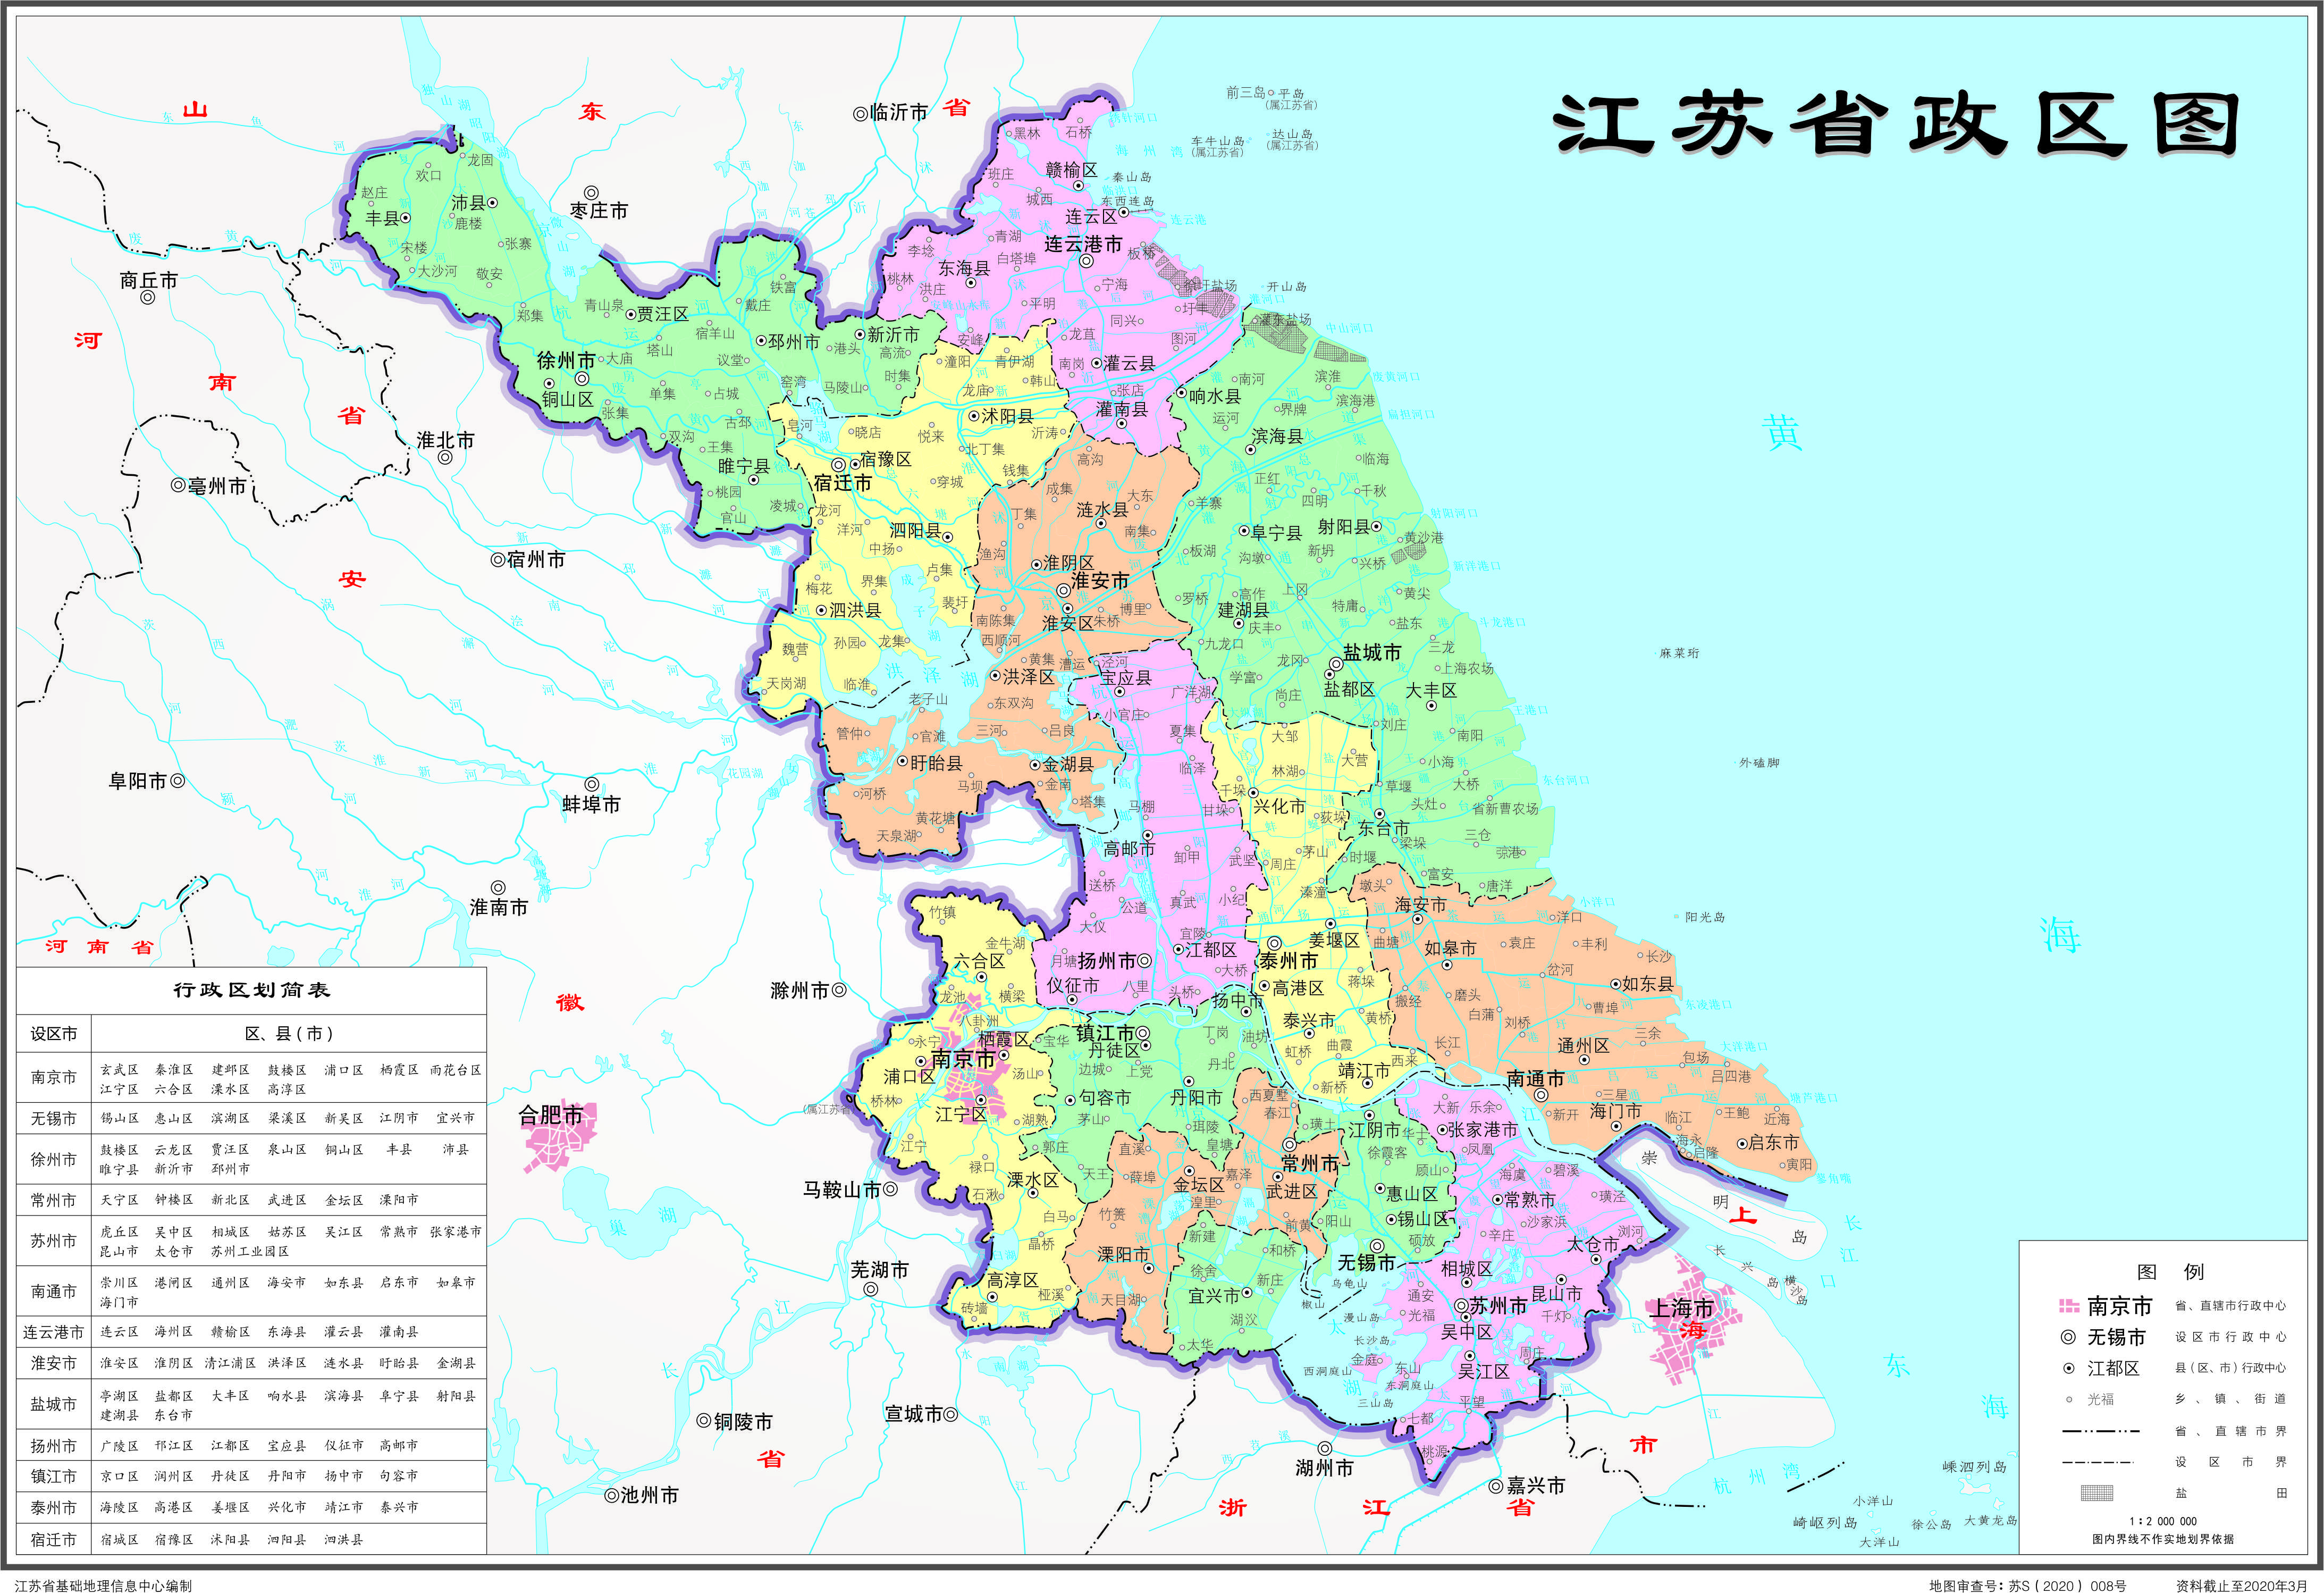 江苏省政区图